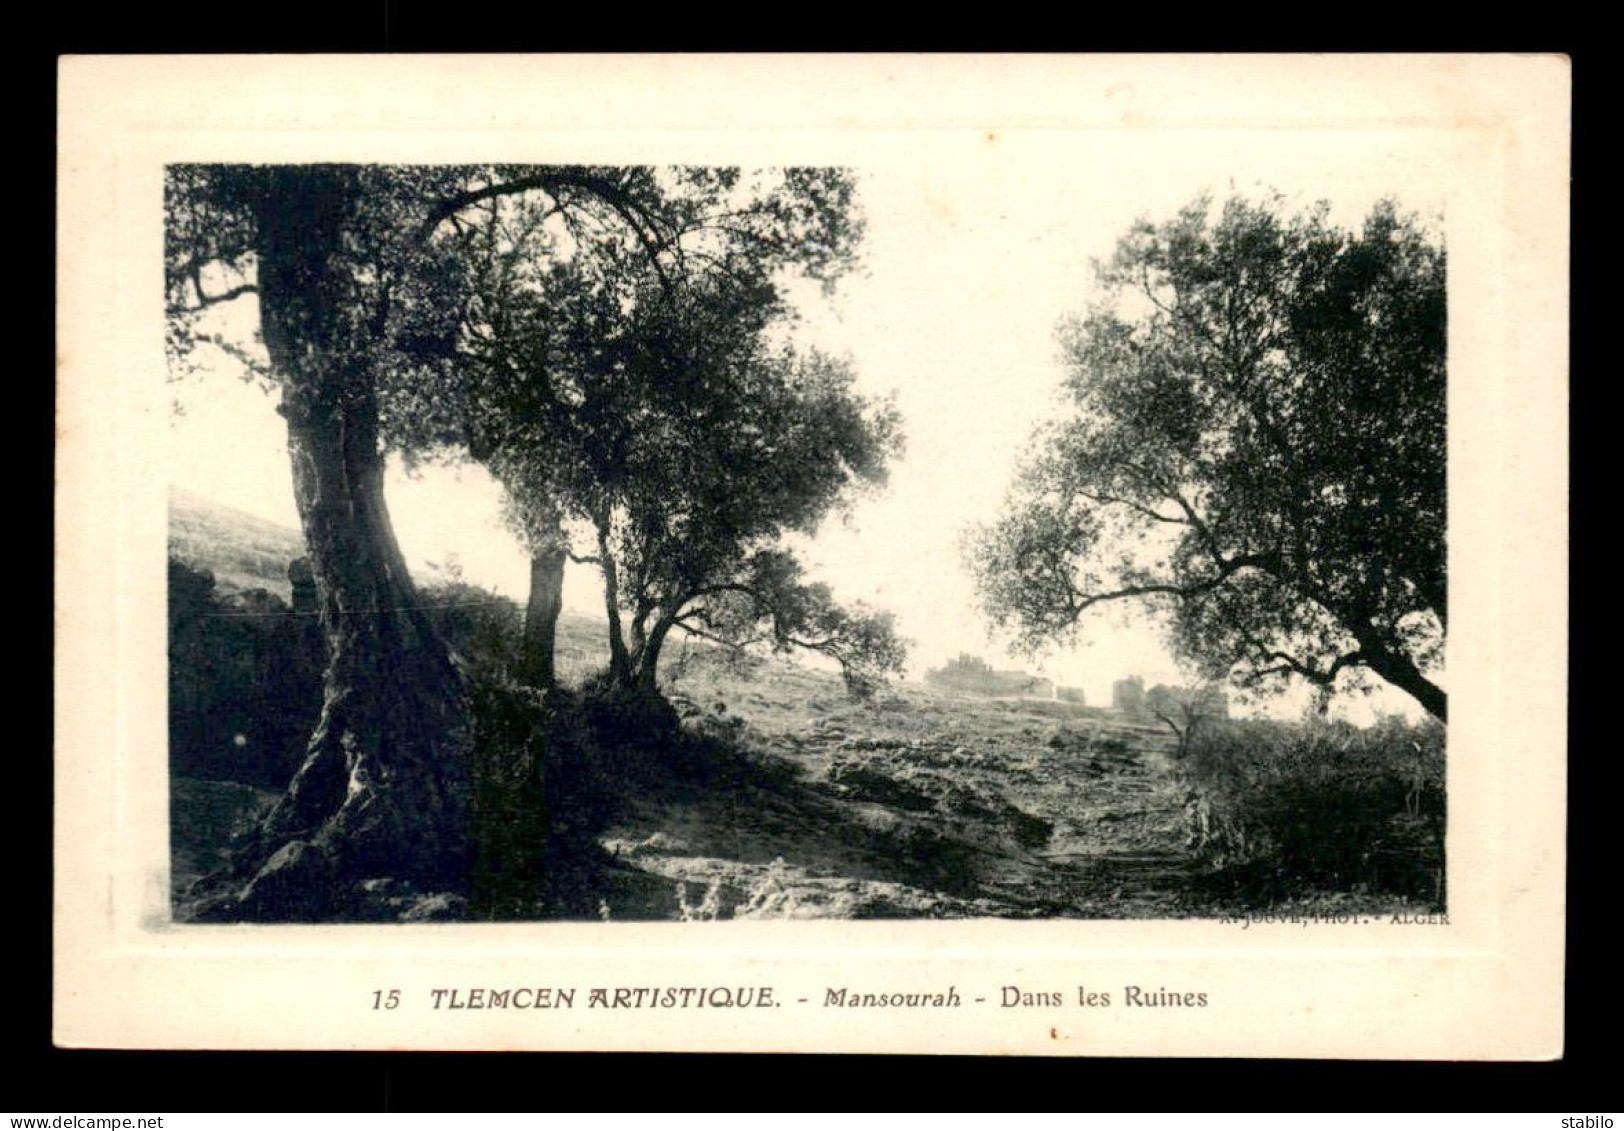 ALGERIE - TLEMCEN - MANSOURAH - DANS LES RUINES - Tlemcen